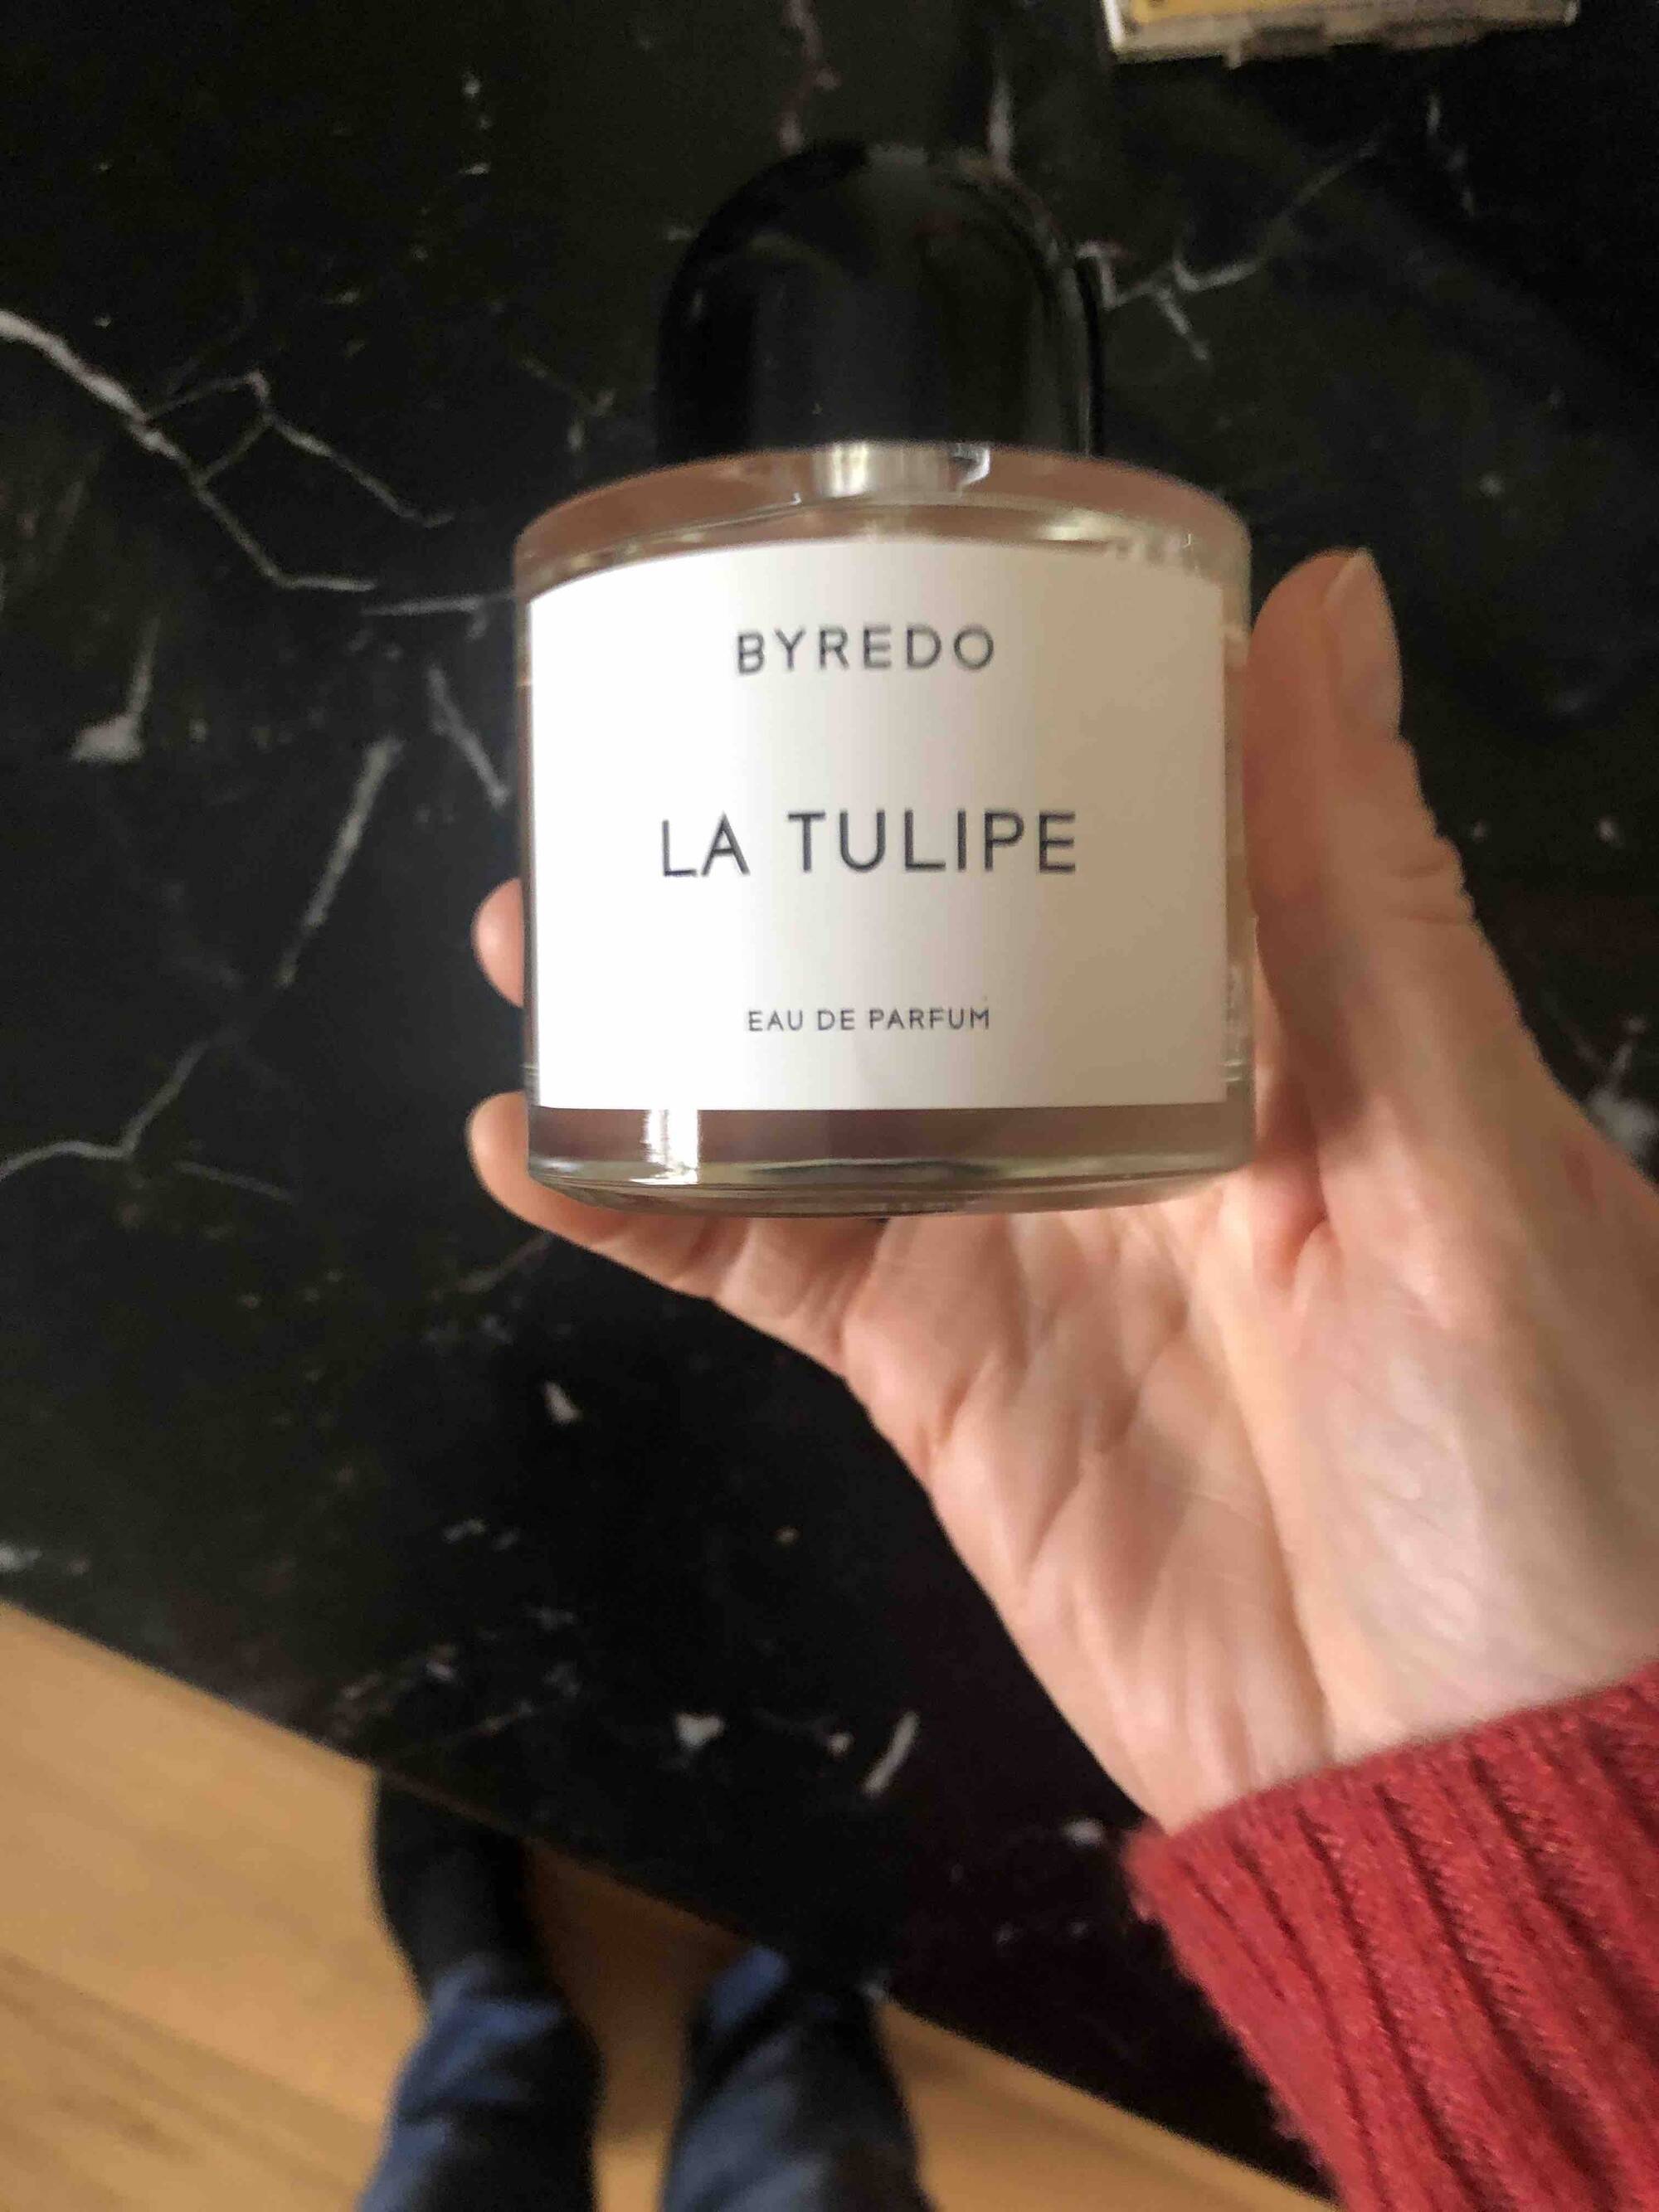 BYREDO - La tulipe - Eau de parfum